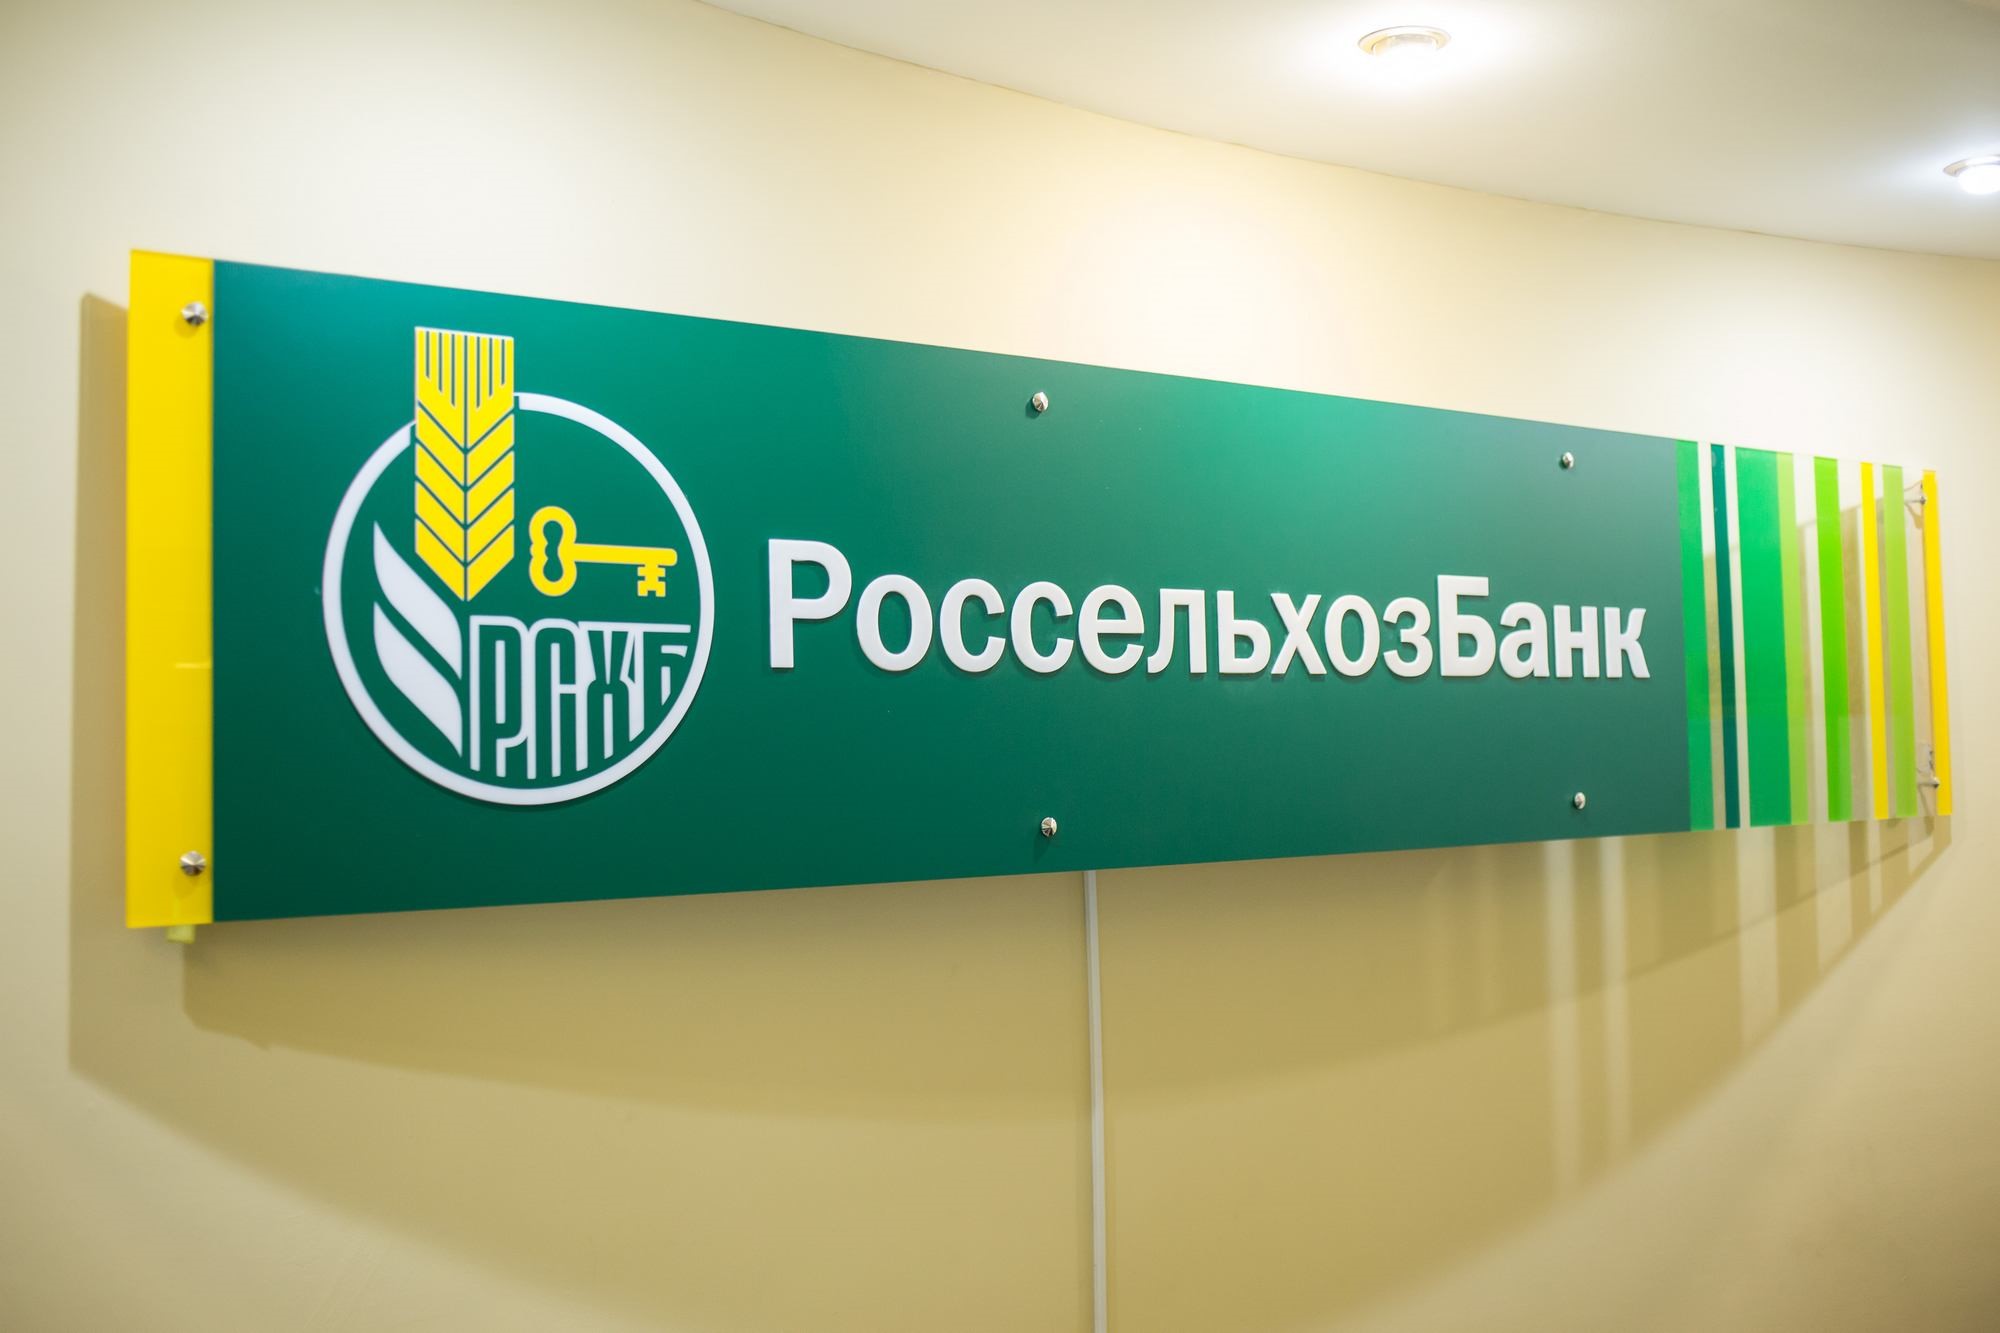 АО «Россельхозбанк» оплатило штраф в размере 300 тысяч рублей